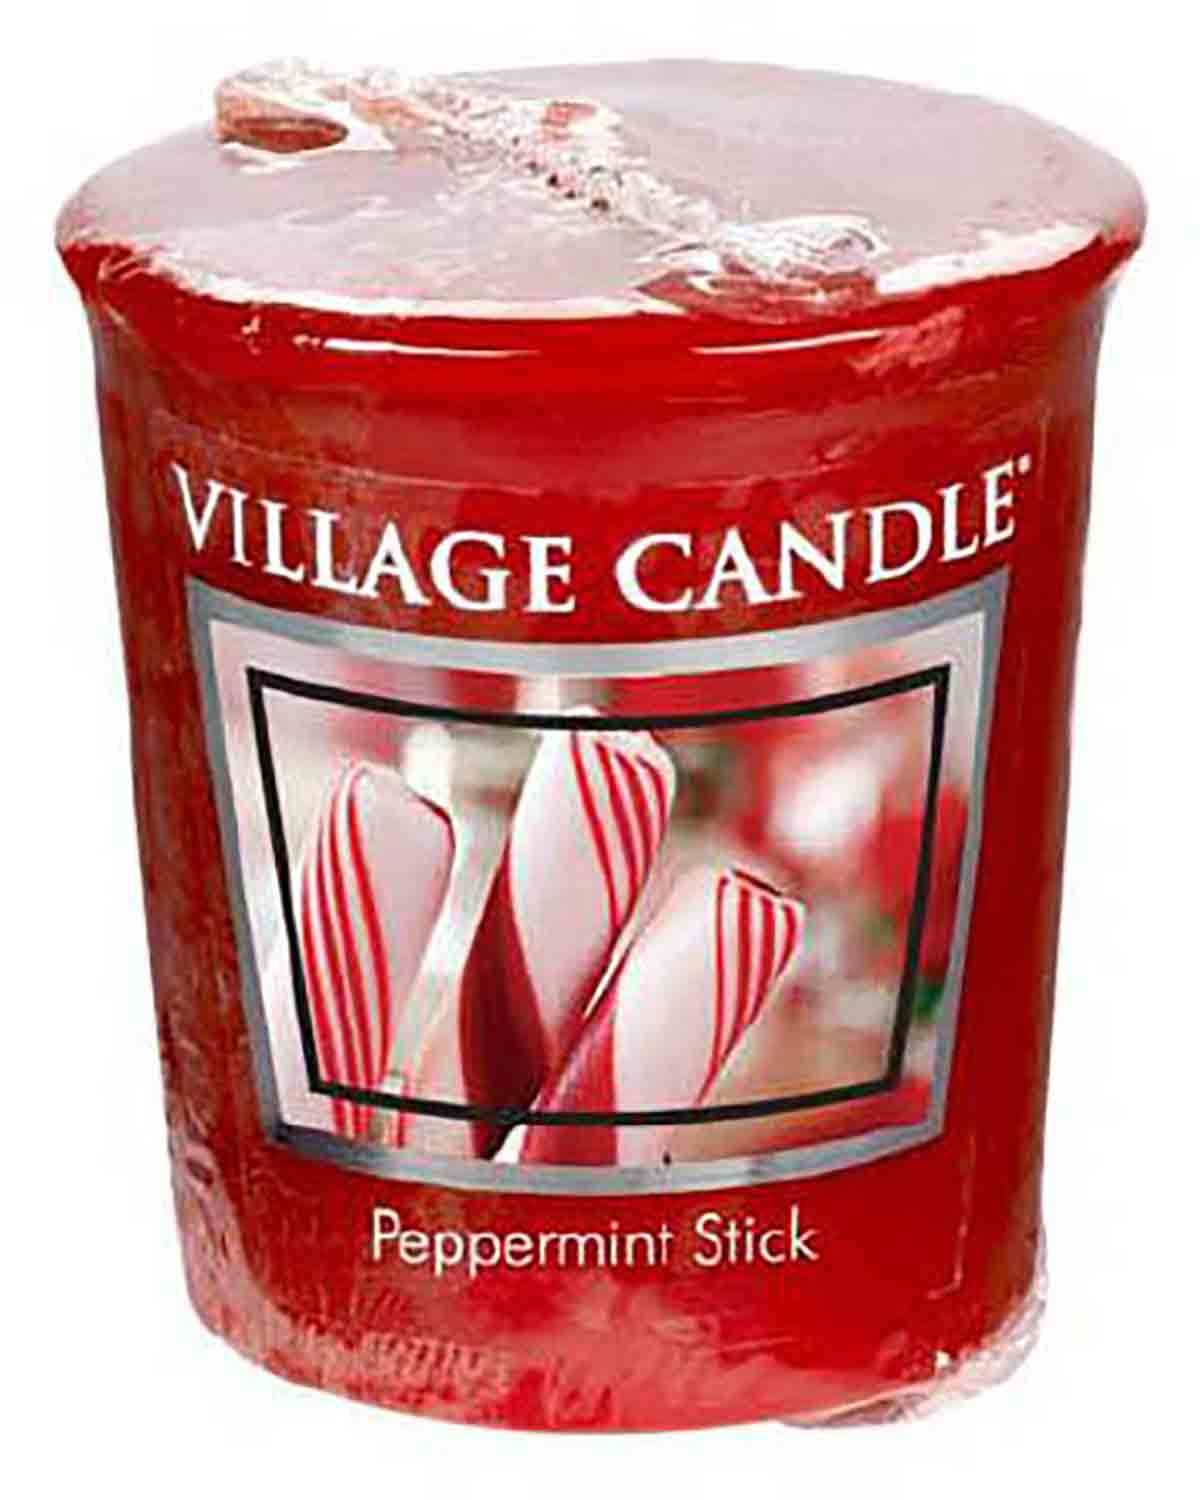 Village Candle Peppermint Stick 57 g Votivní svíčka